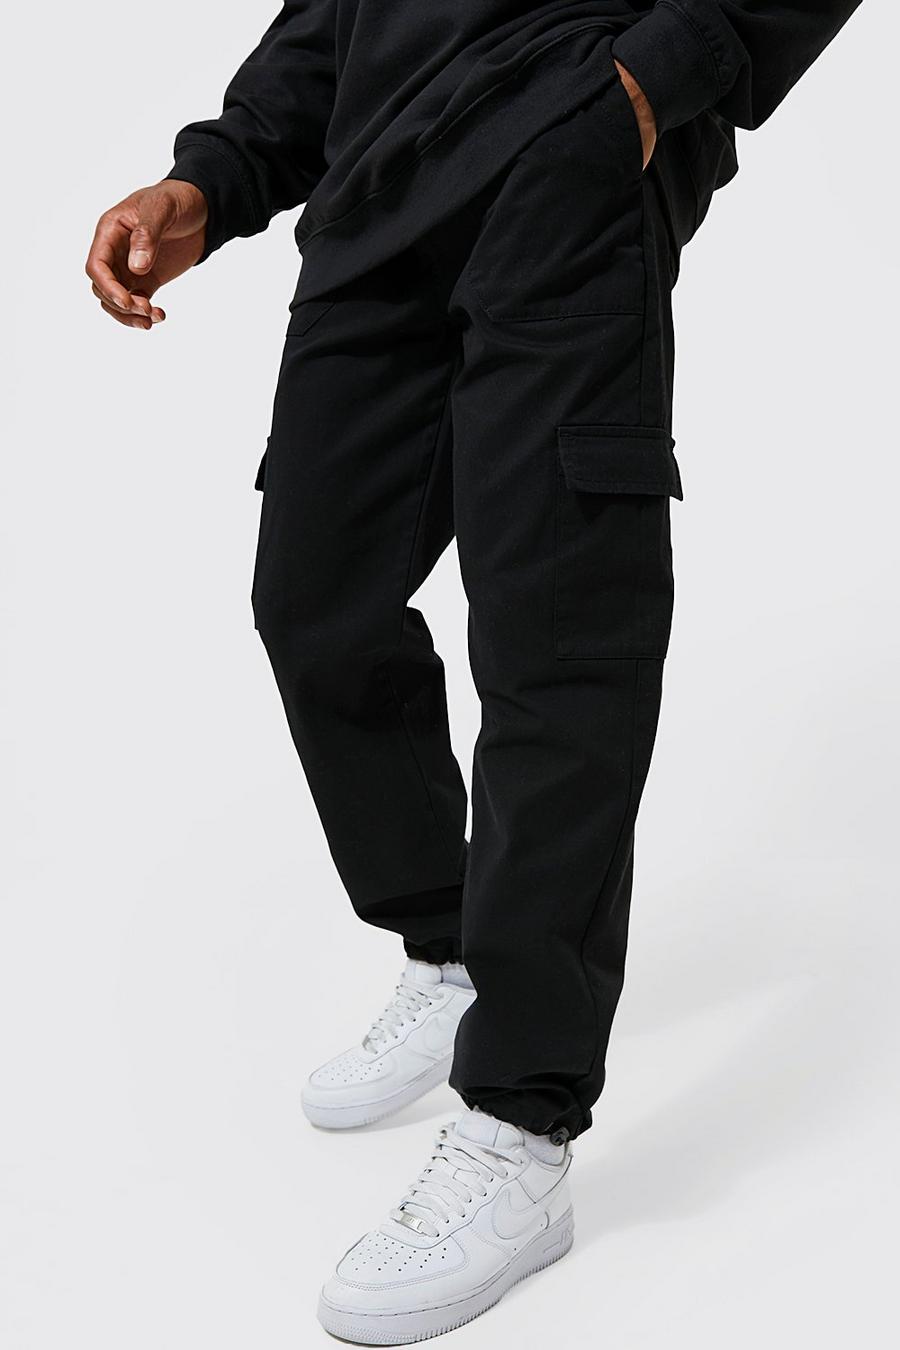 Pantalon cargo à poches multiples et cordons de serrage, Black noir